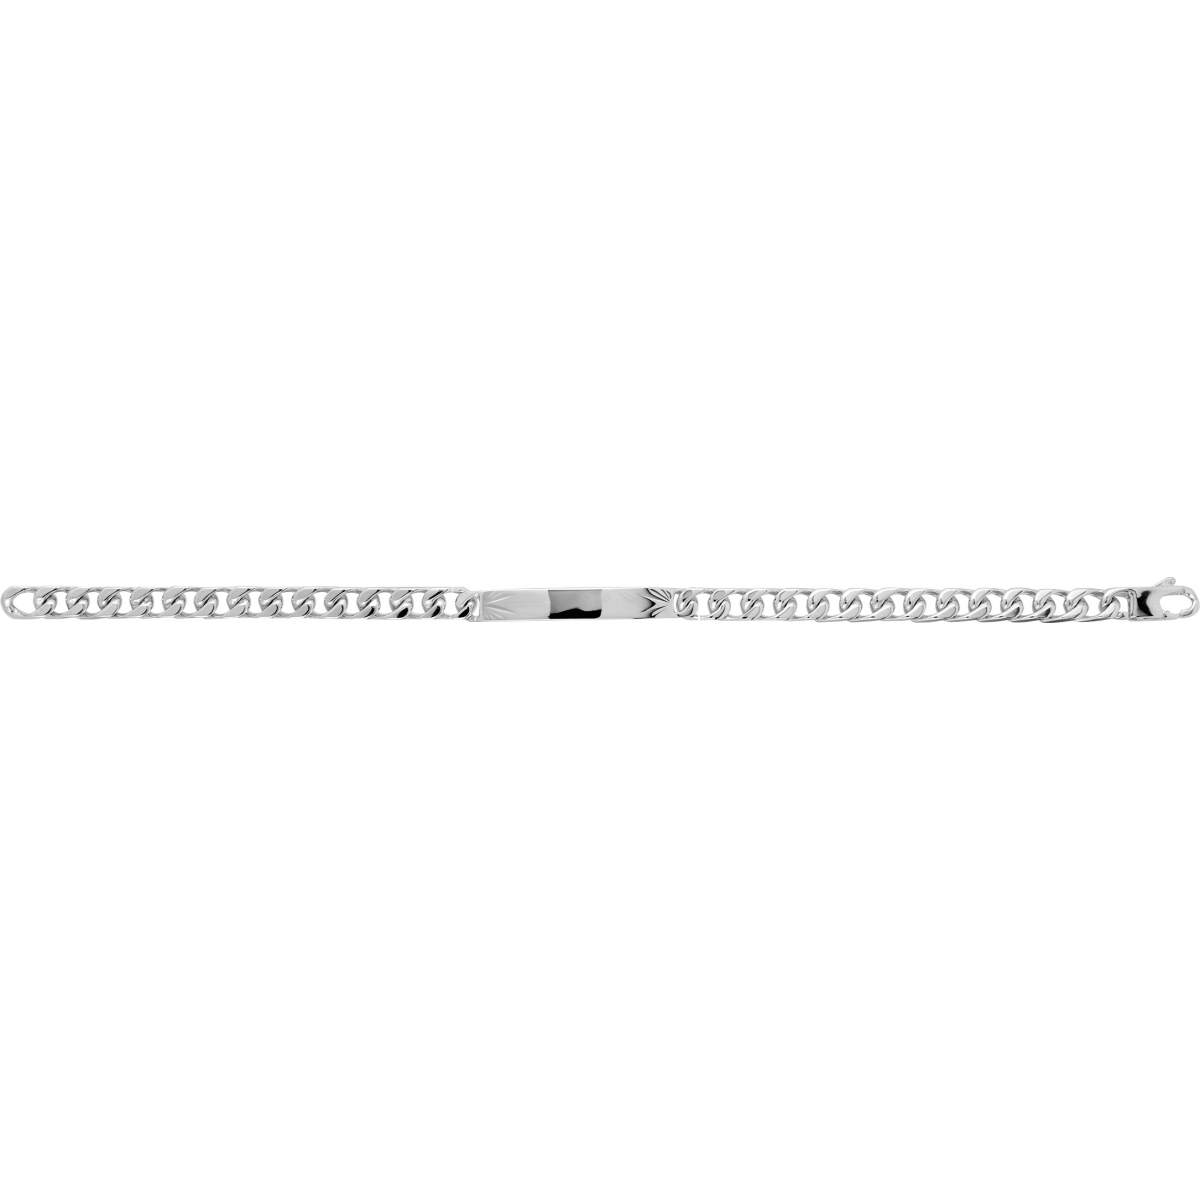 ID baby bracelet 5mm rh925 Silver - Size: 18  Lua Blanca  304069.00.18